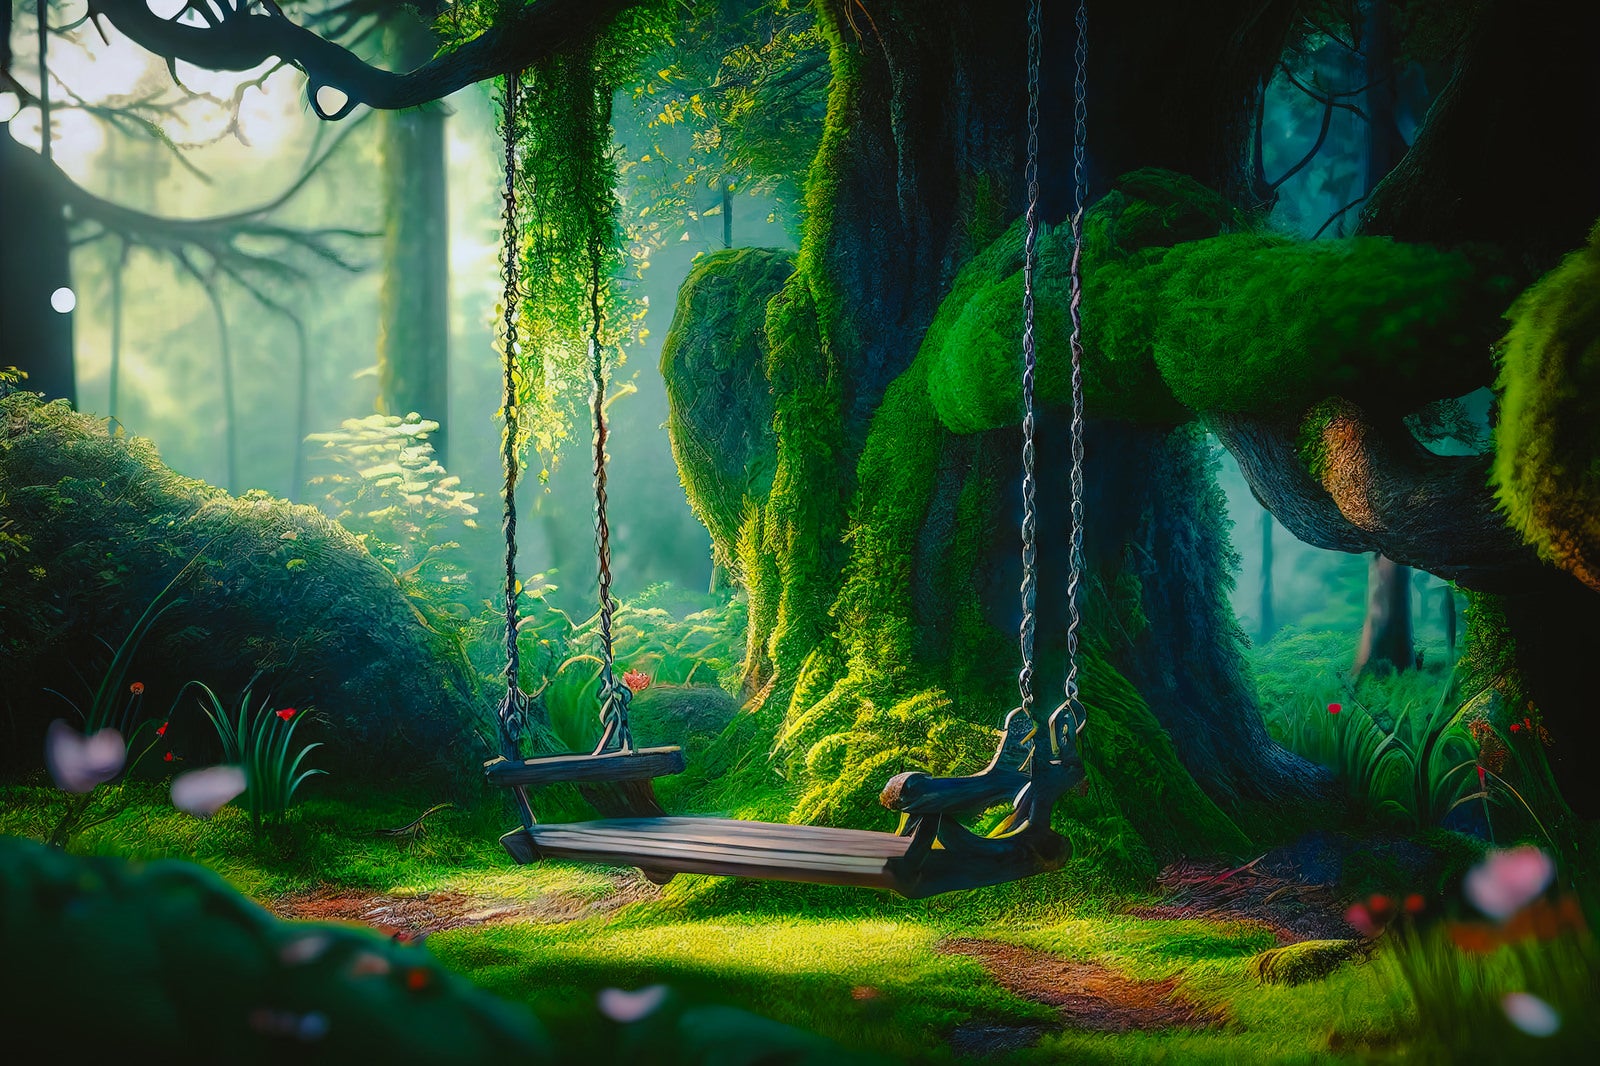 「ブランコが揺れる静寂な森」の写真